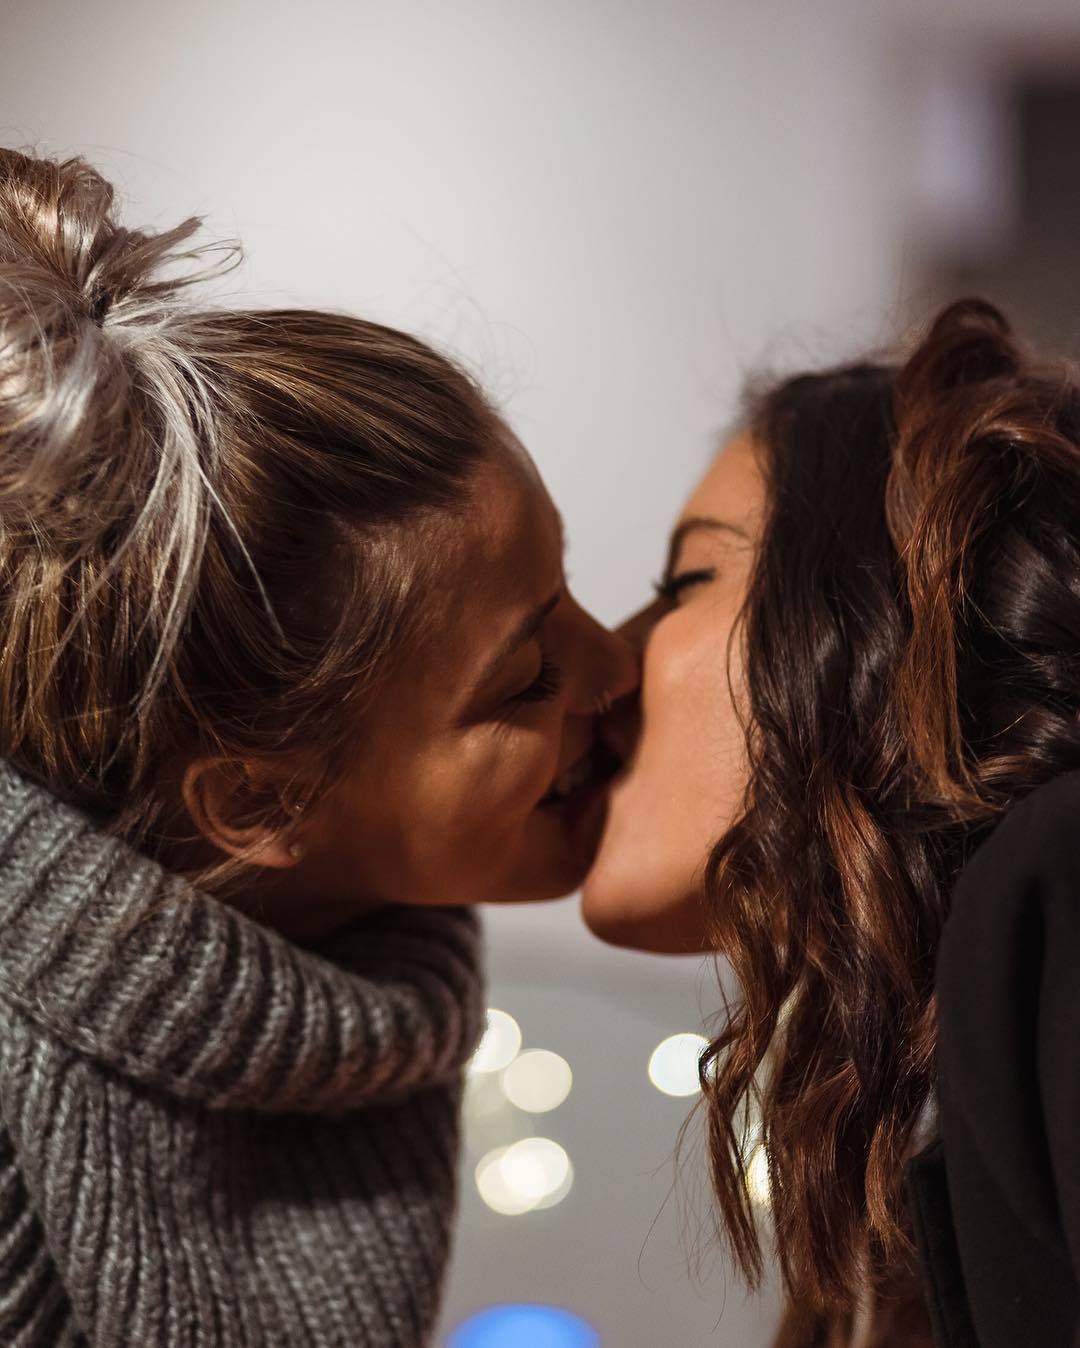 Lopez lesbian. Любовь двух женщин. Поцелуй девушек. Девушки целуются. Красивый поцелуй двух девушек.